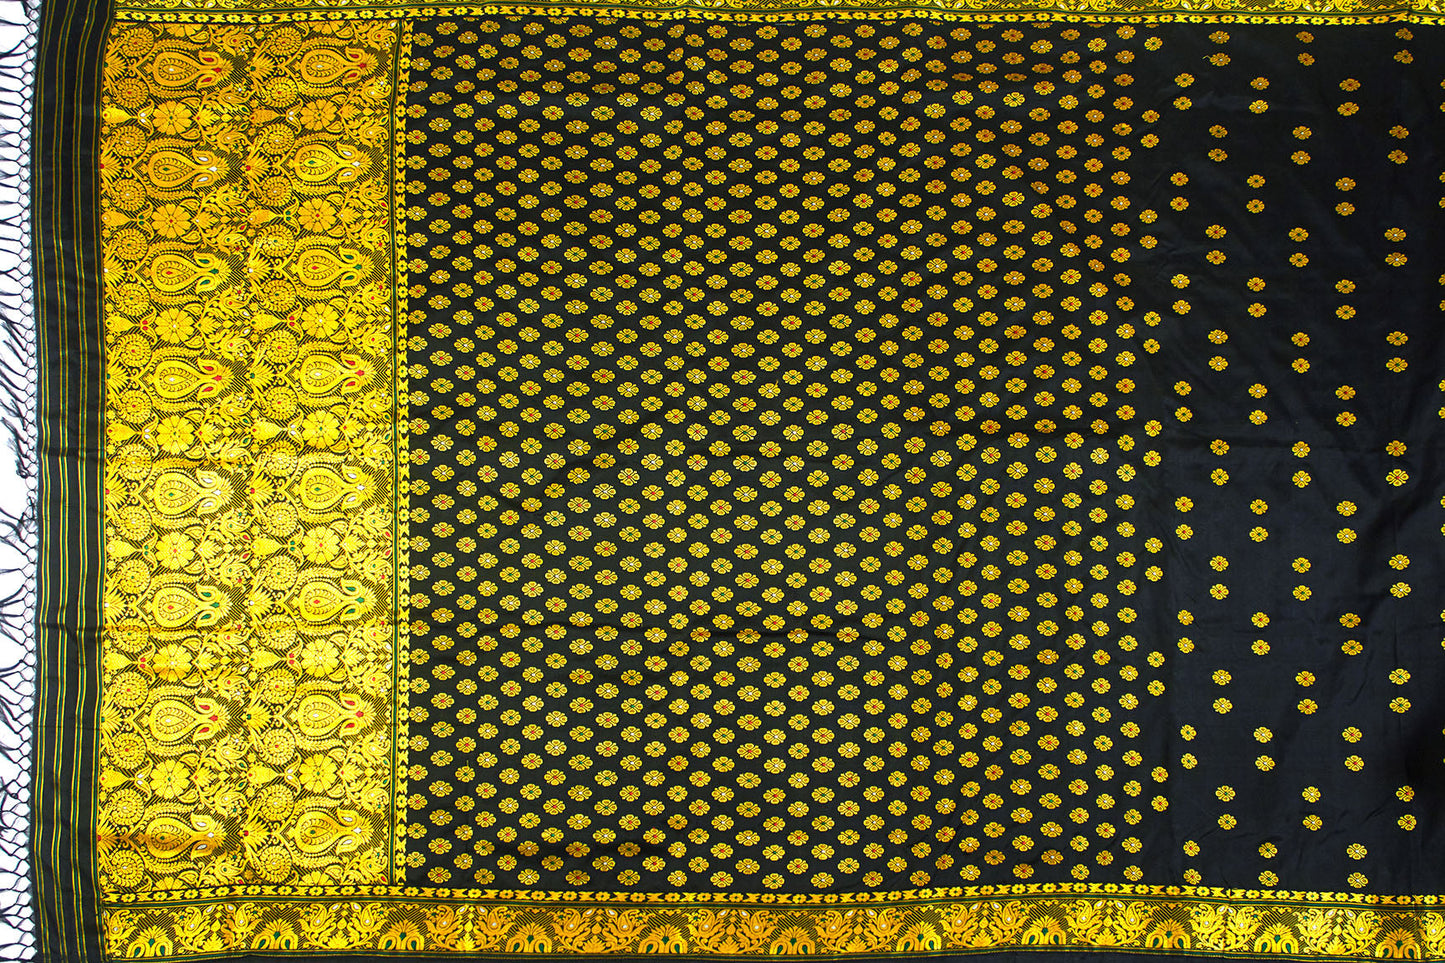 Fleur noire et dorée Assam Pat Handloom Silk Sari (fait sur commande)